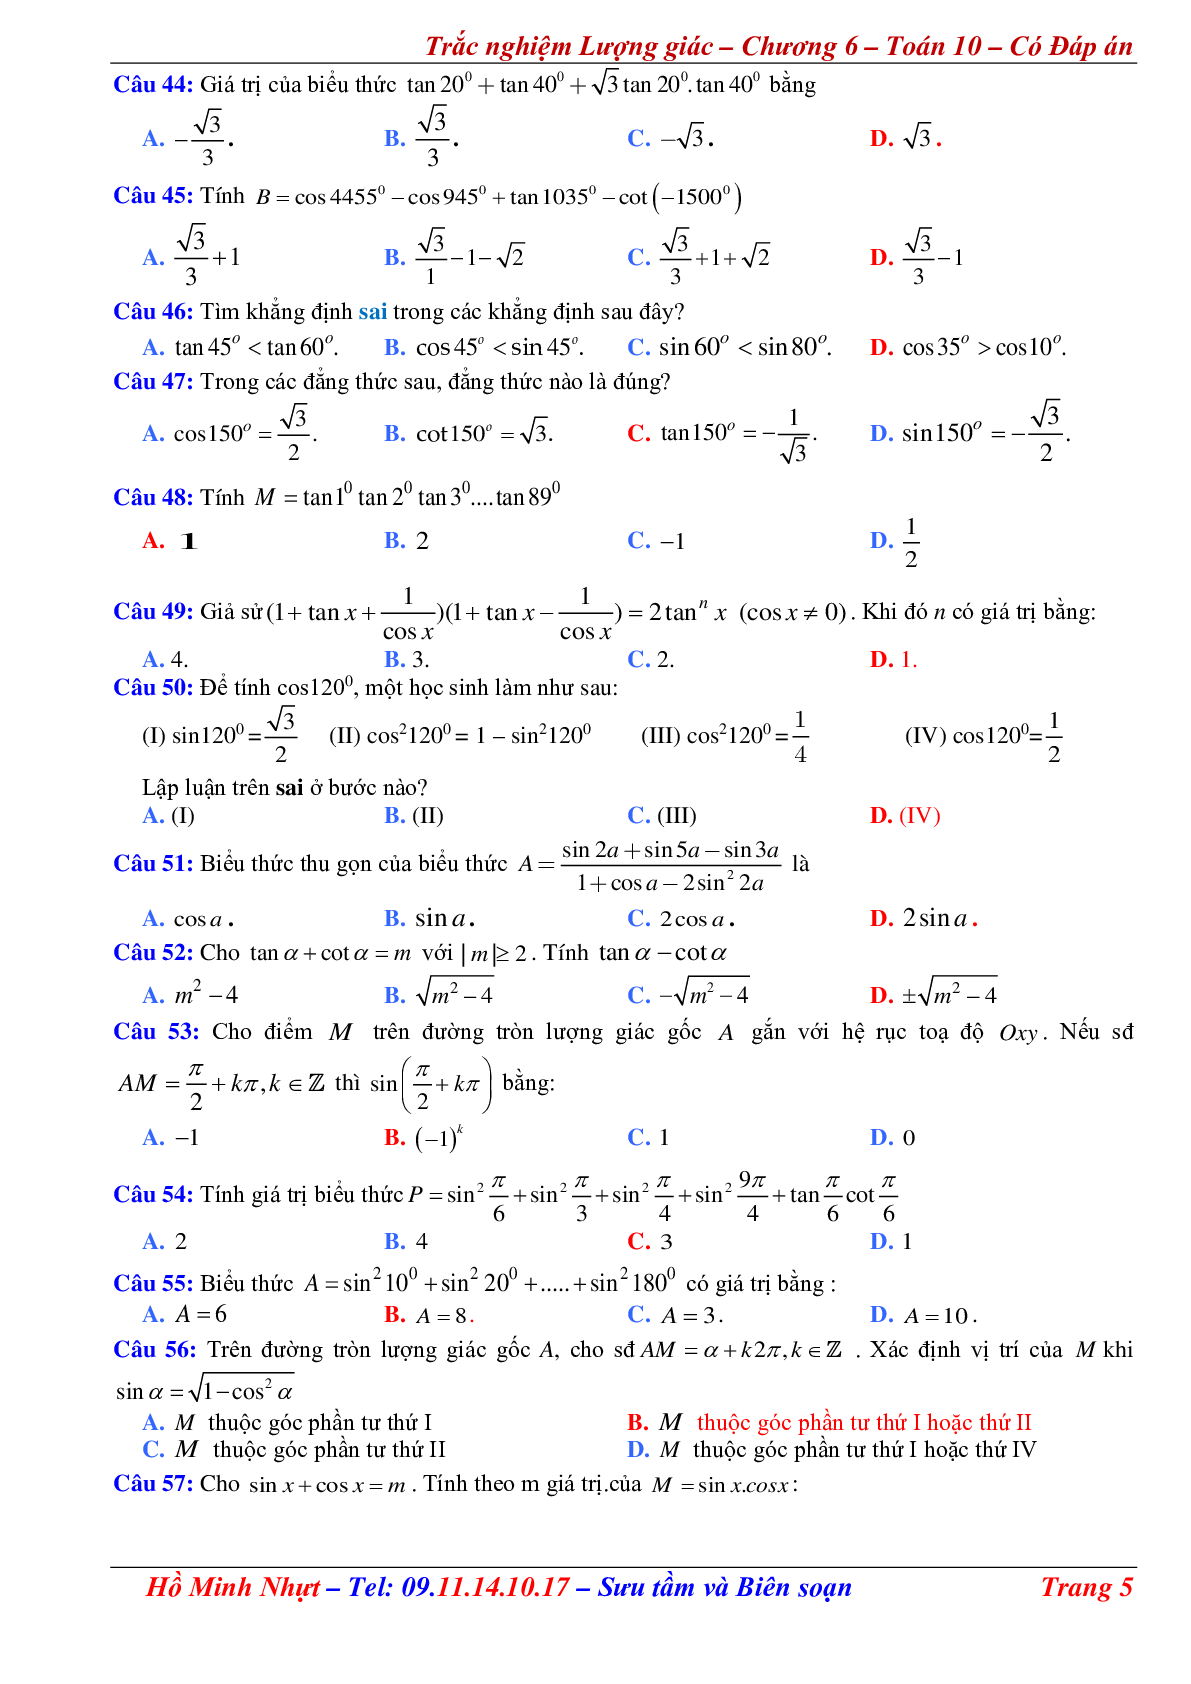 310 Bài tập trắc nghiệm công thức lượng giác có đáp án (trang 5)